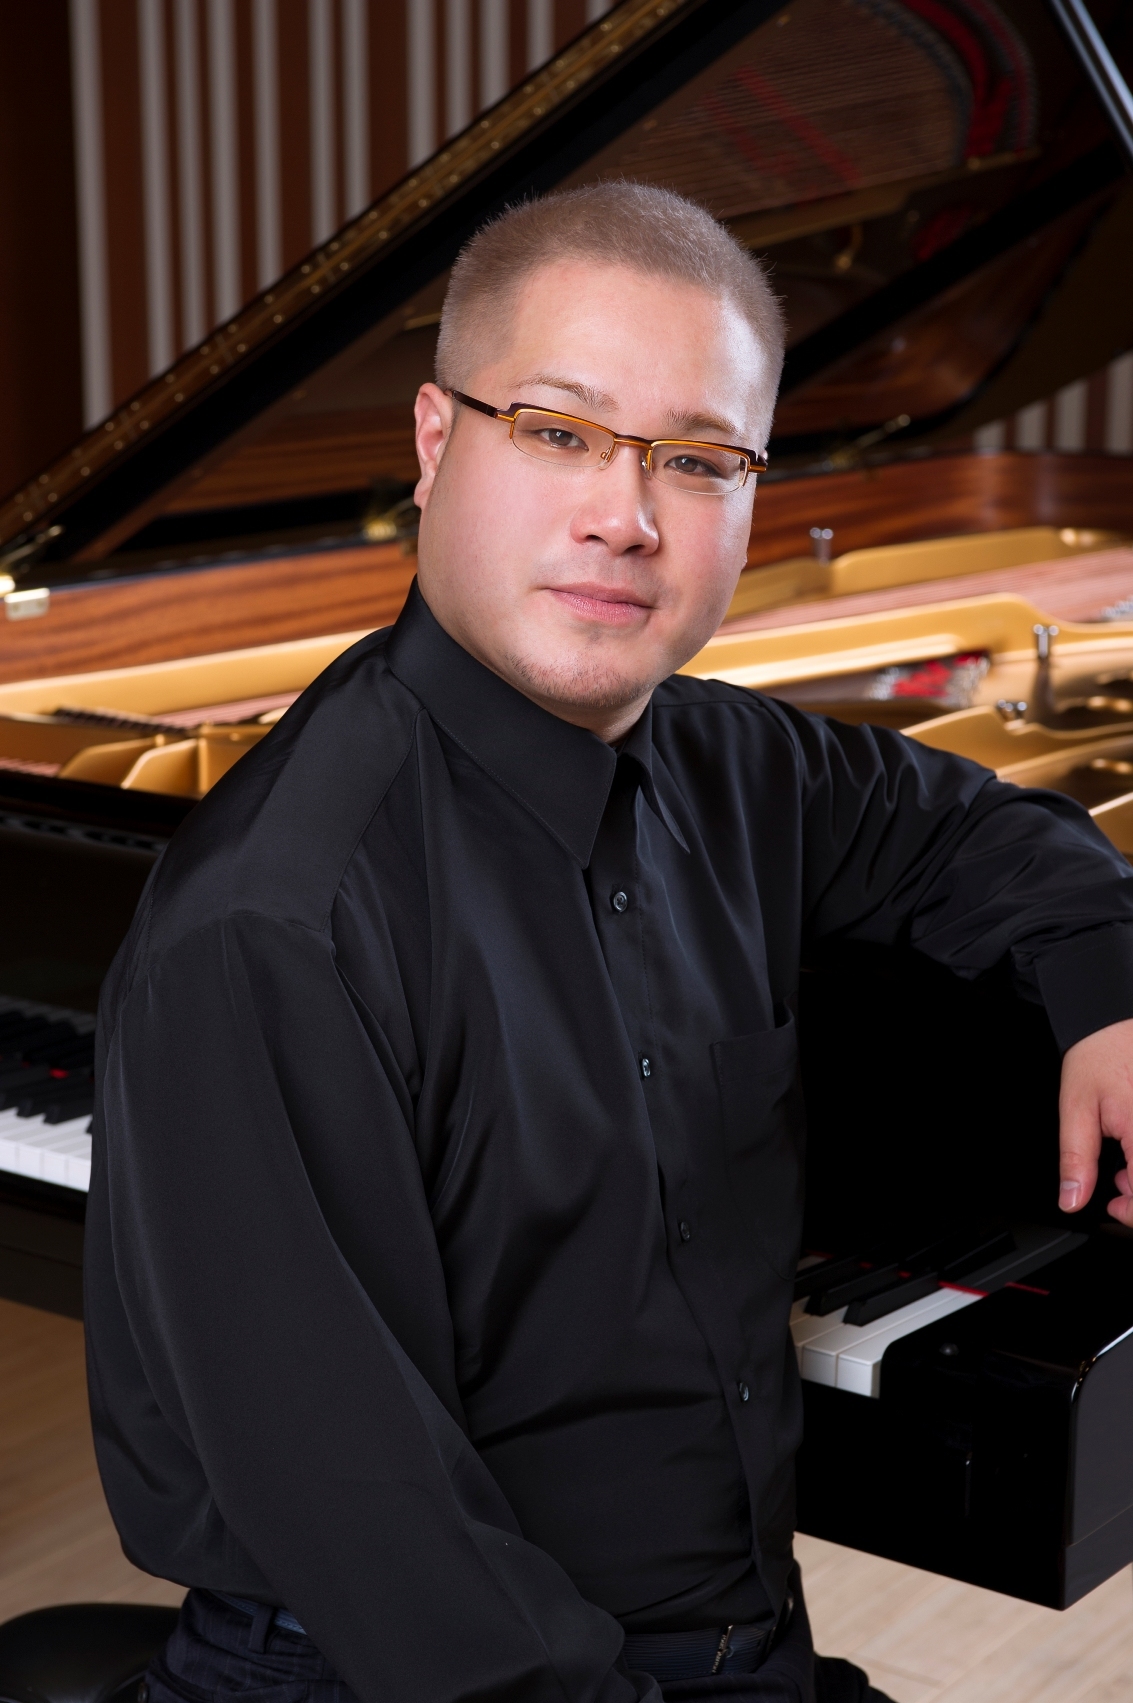 既に世界各地で演奏活動する田村響が第一ピアノを担当した (C)武藤章